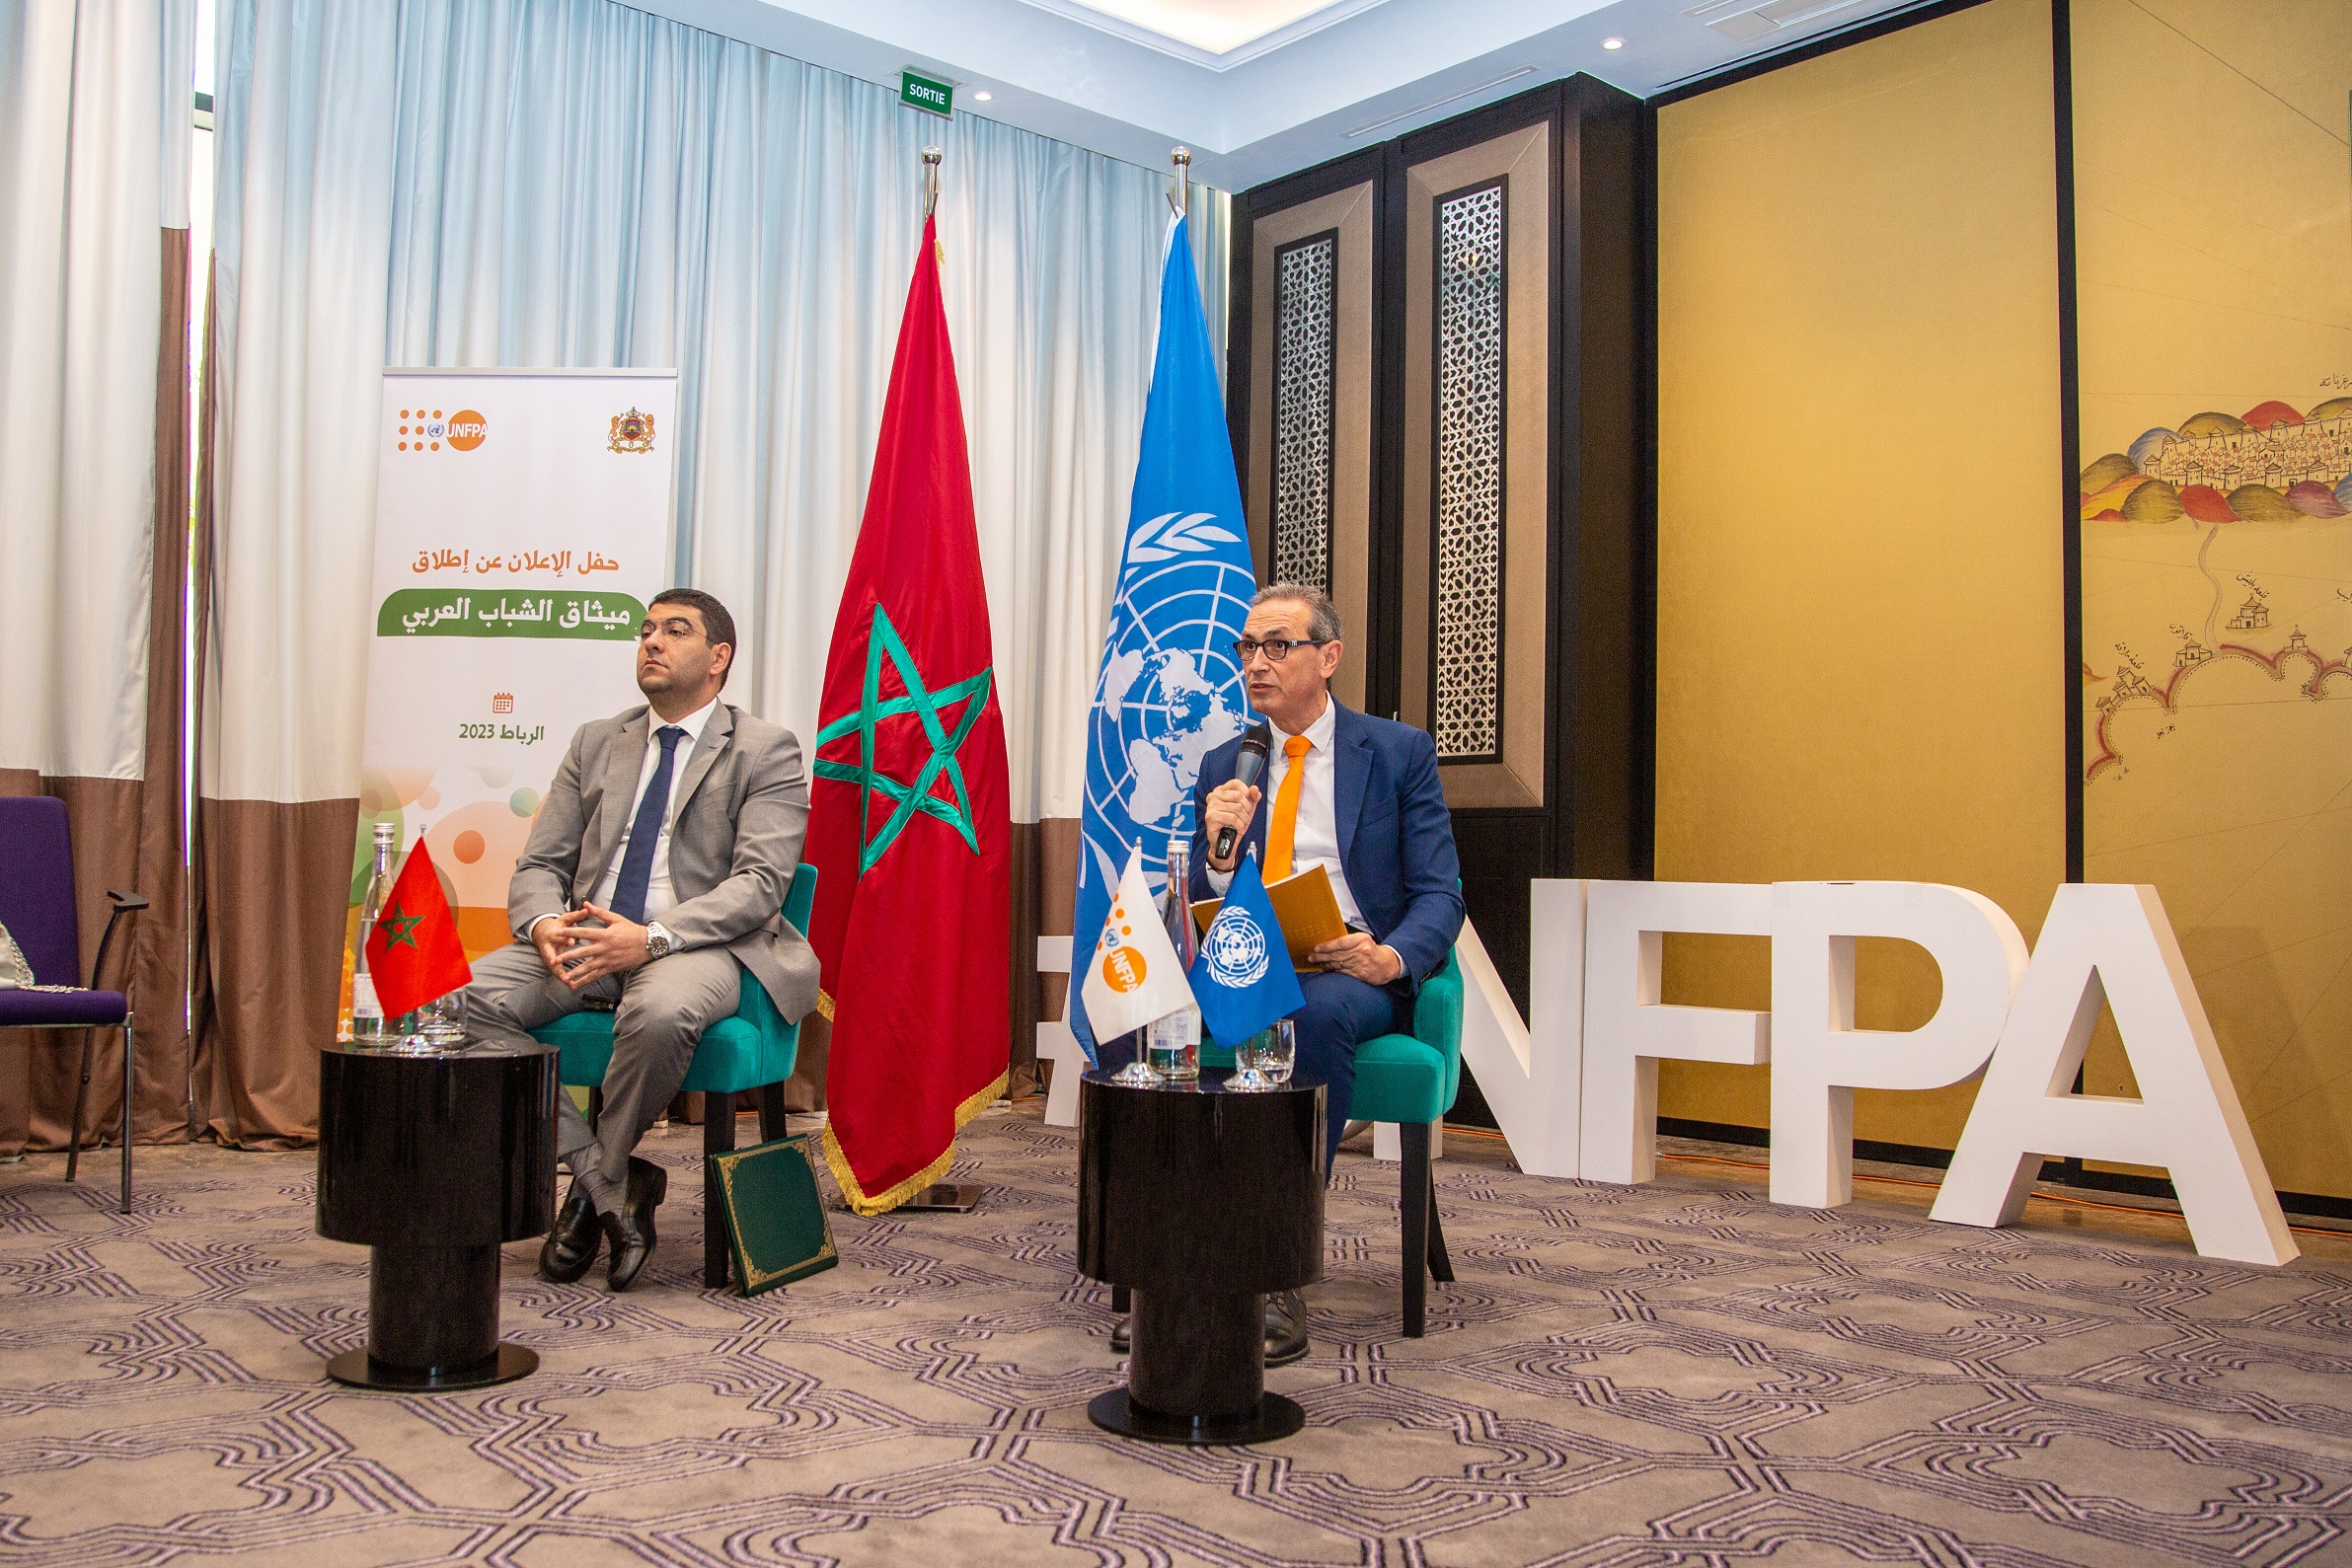  Cérémonie de lancement de la Charte arabe de la jeunesse à Rabat